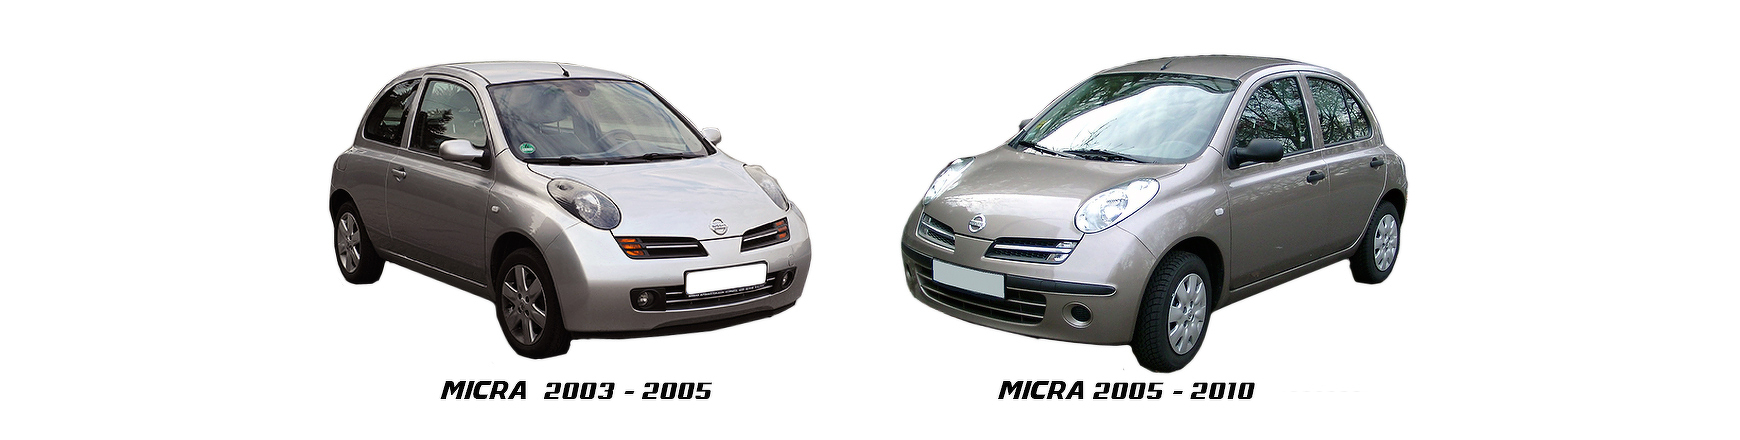 Recambios de Nissan Micra de 2002, 2003, 2004 y 2005 al mejor precio.